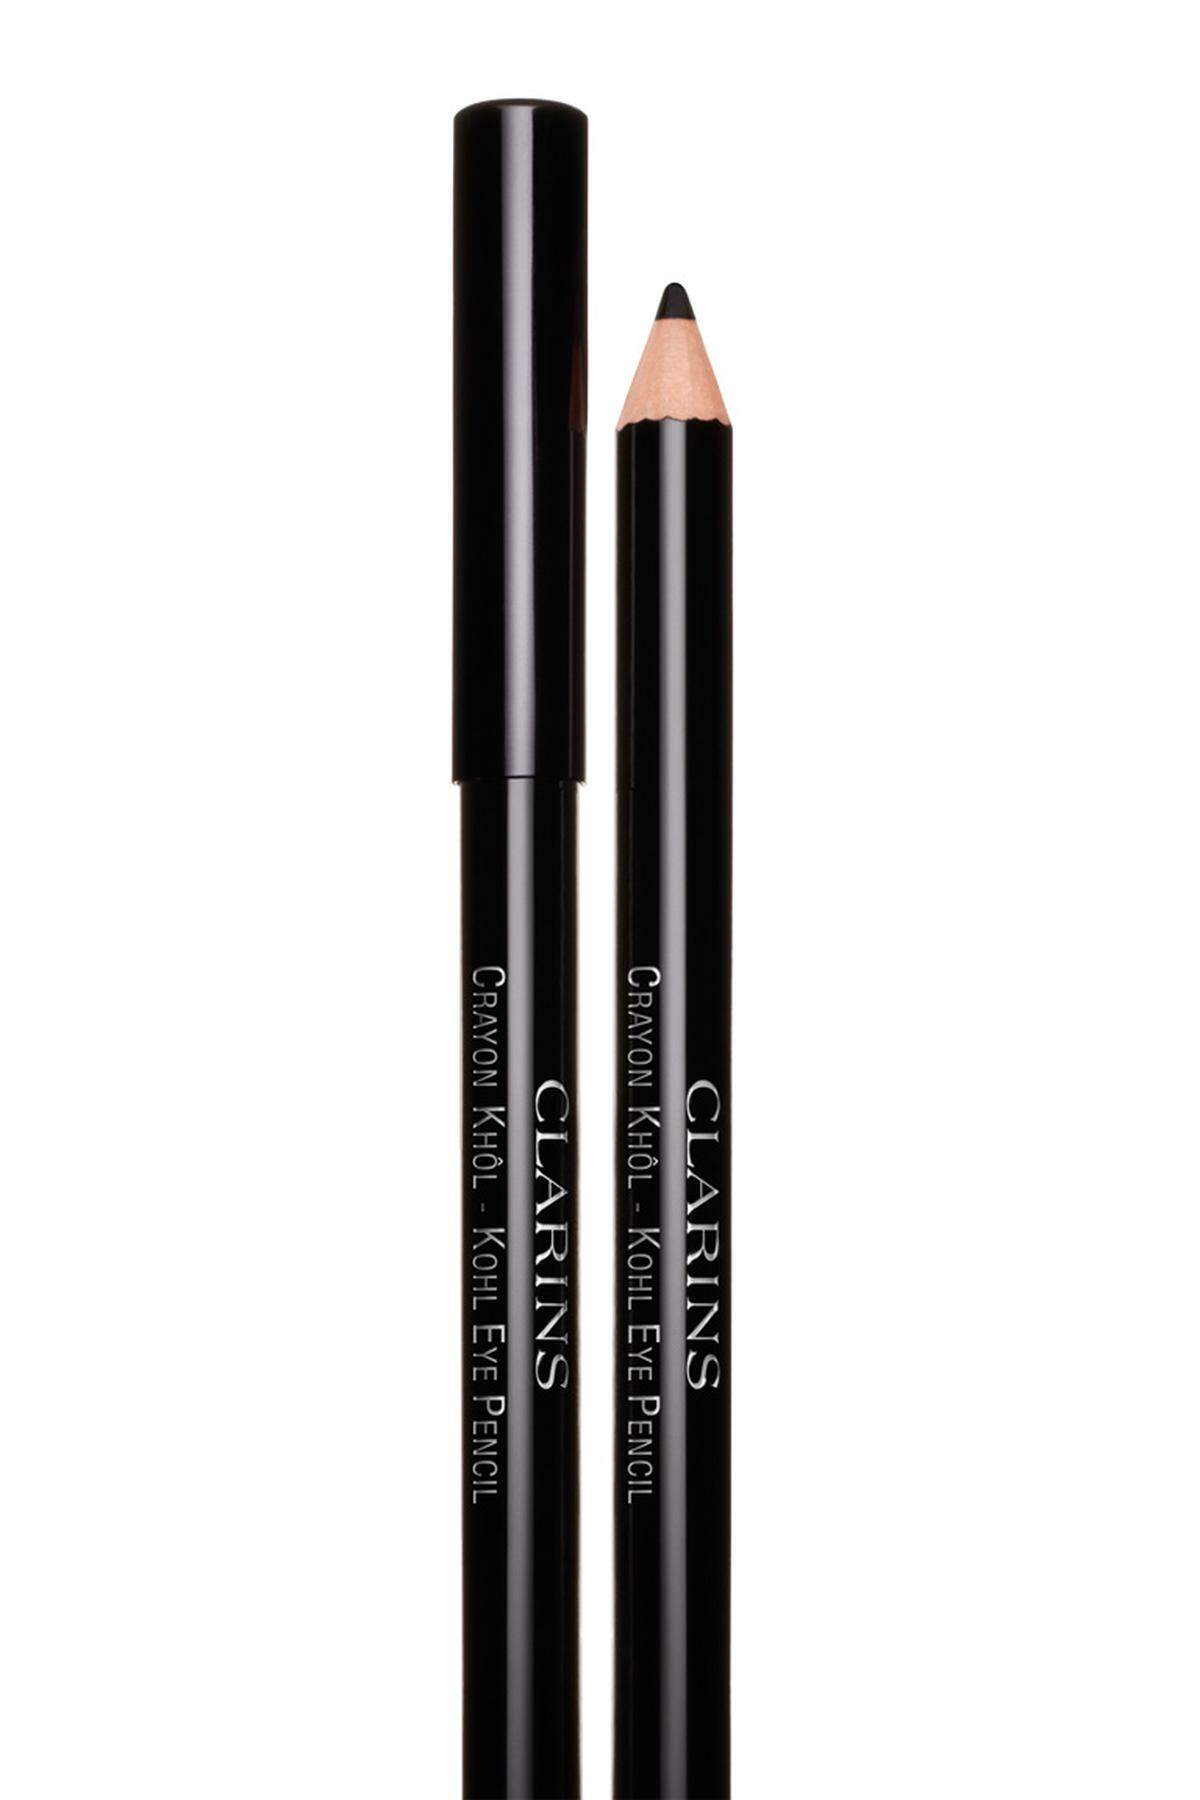 Expressive Augen lassen sich auch mit dem „Crayon Khôl Extrême“ von Clarins schminken (13,90 Euro).